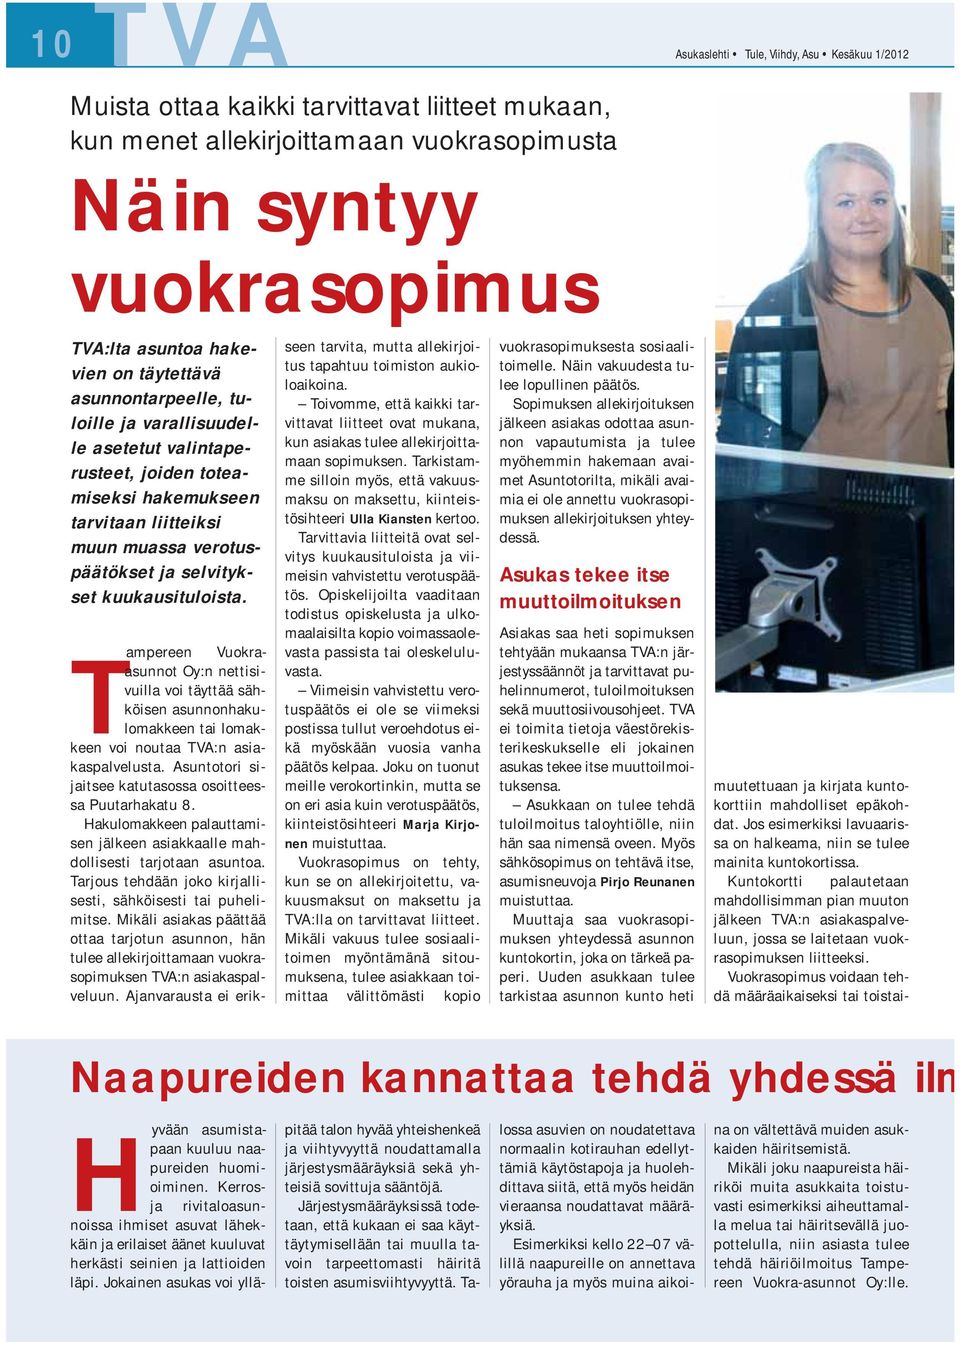 Tampereen Vuokraasunnot Oy:n nettisivuilla voi täyttää sähköisen asunnonhakulomakkeen tai lomakkeen voi noutaa TVA:n asiakaspalvelusta. Asuntotori sijaitsee katutasossa osoitteessa Puutarhakatu 8.